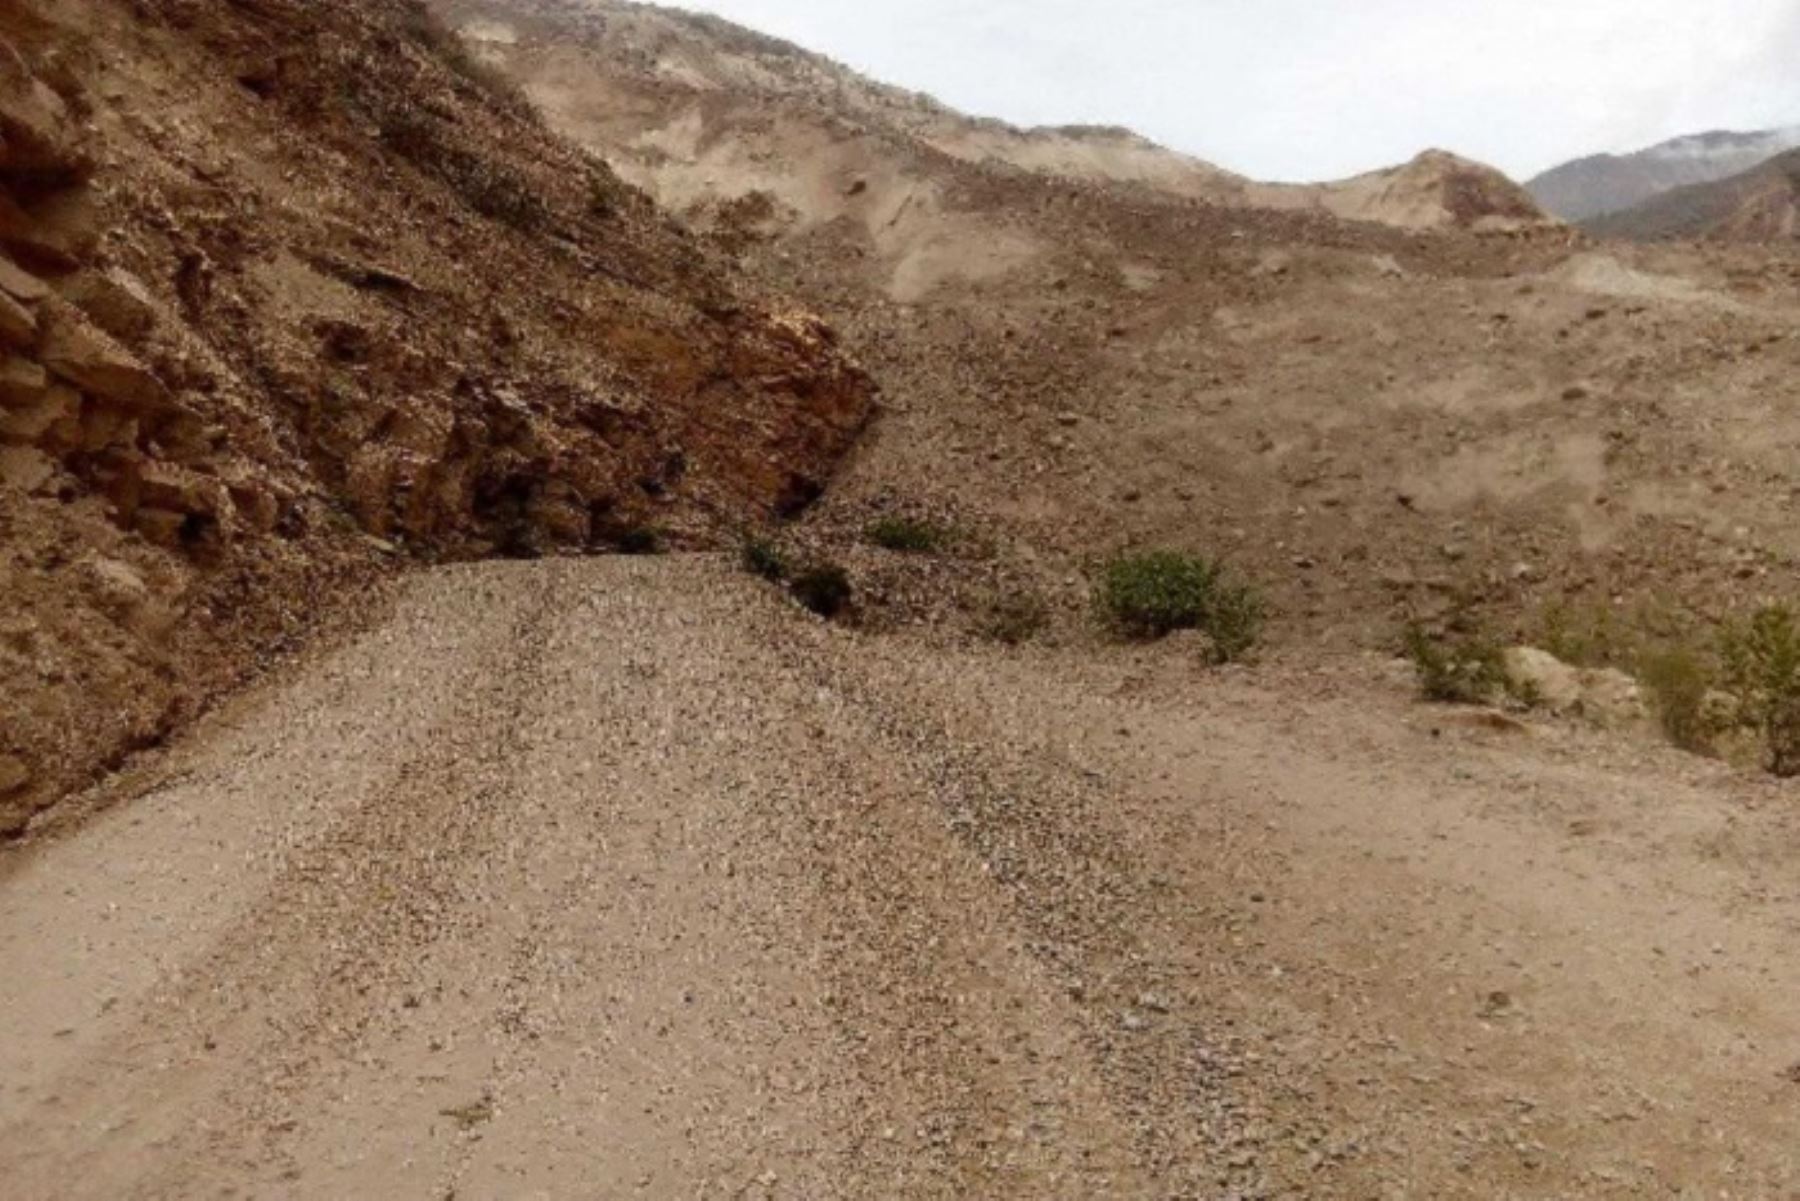 Las lluvias intensas han provocado el derrumbe de un cerro en el centro poblado Suchimán, en la provincia de Sihuas, región Áncash, causado daños en el tramo vía que conecta las regiones Áncash, La Libertad y Huánuco, se informó.